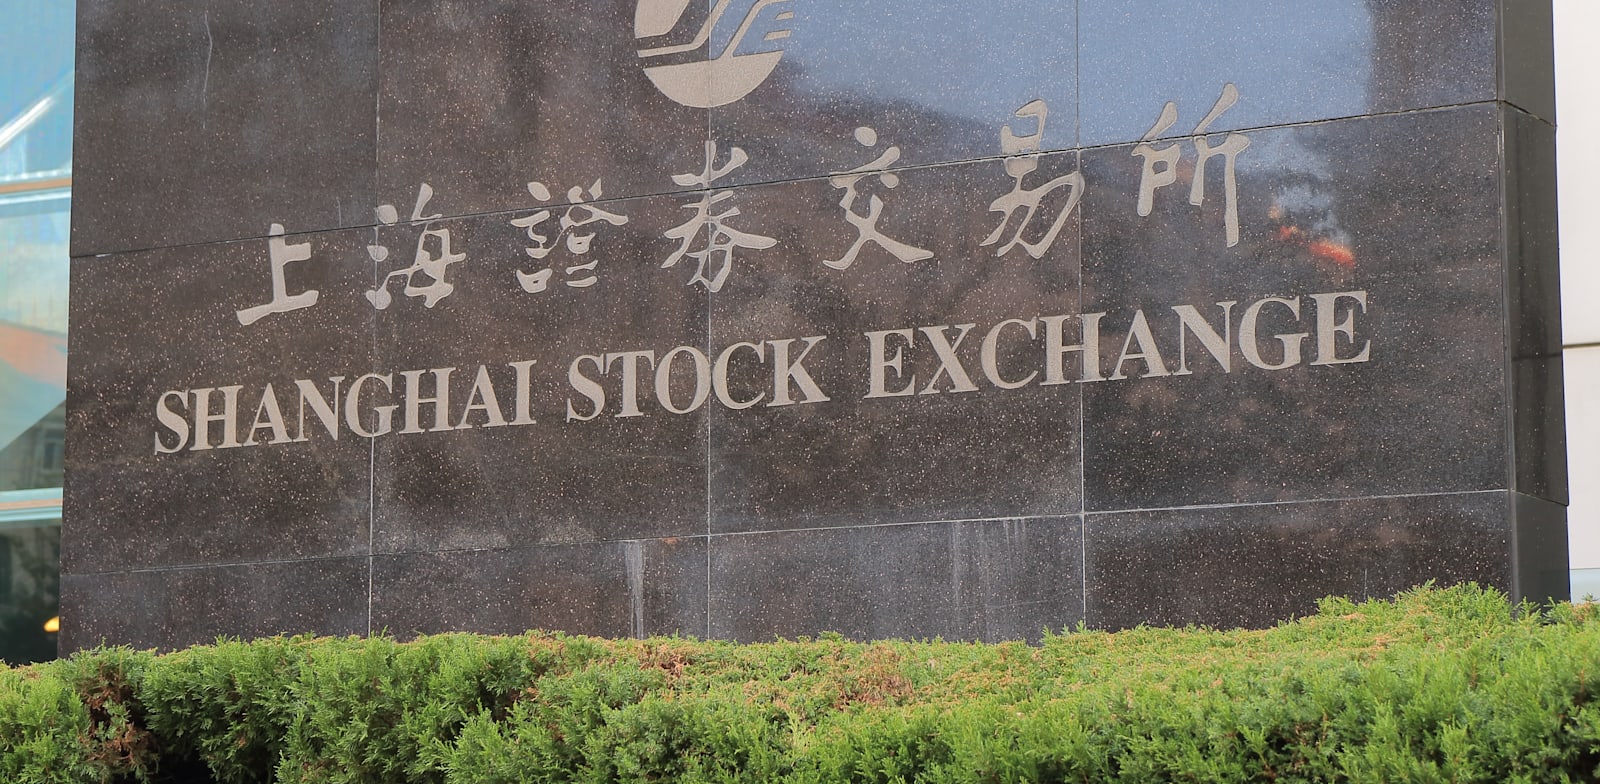 בורסת שנחאי, סין. הכלכלות בעולם יעברו טלטלה מקרו-כלכלית / צילום: Shutterstock